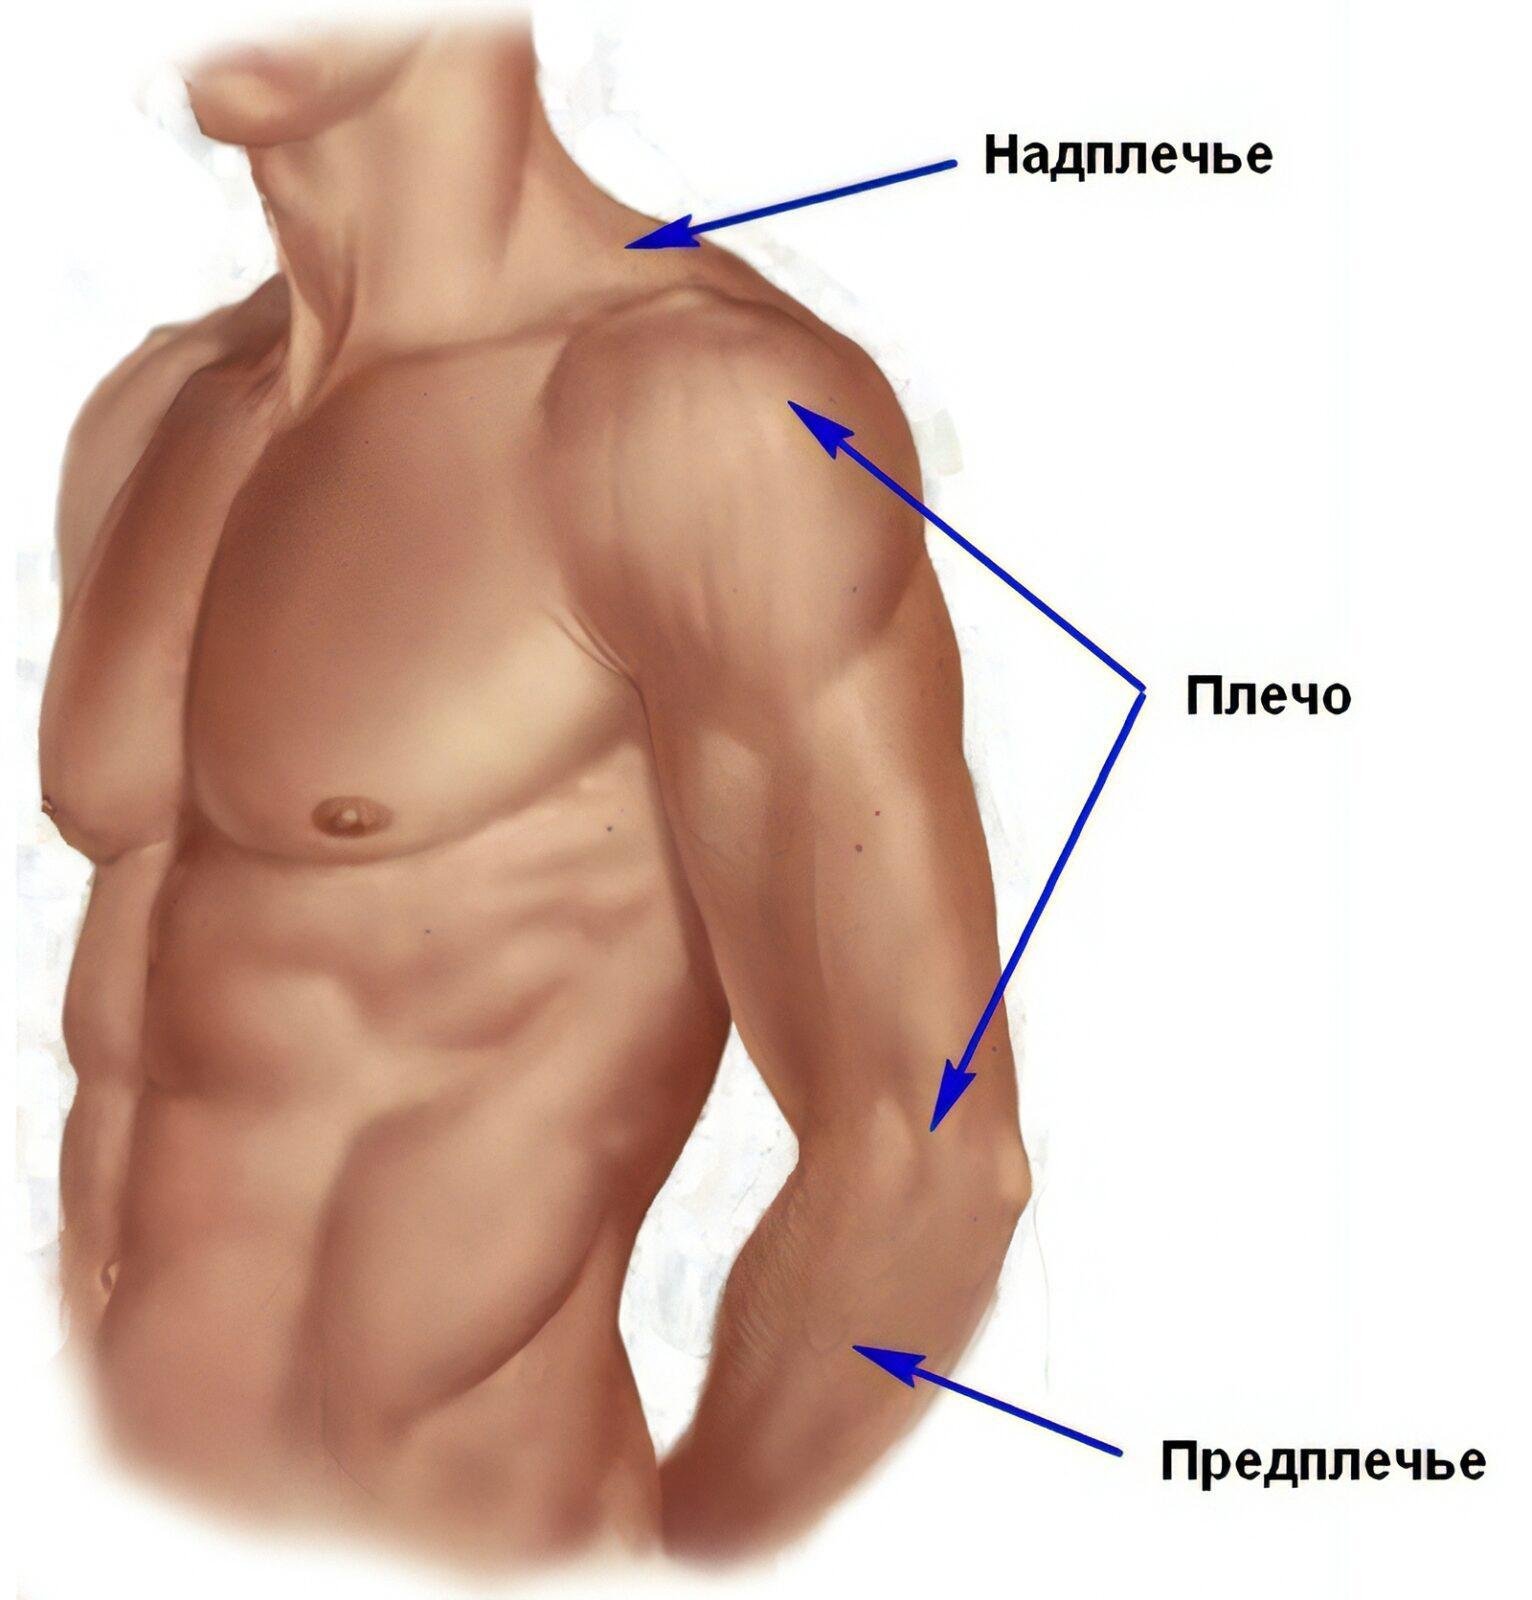 Картинок где находится. Плечо и предплечье анатомия. Где плечо а где предплечье у человека. Предплечье плечо надплечье. Анатомия предплечья человека.